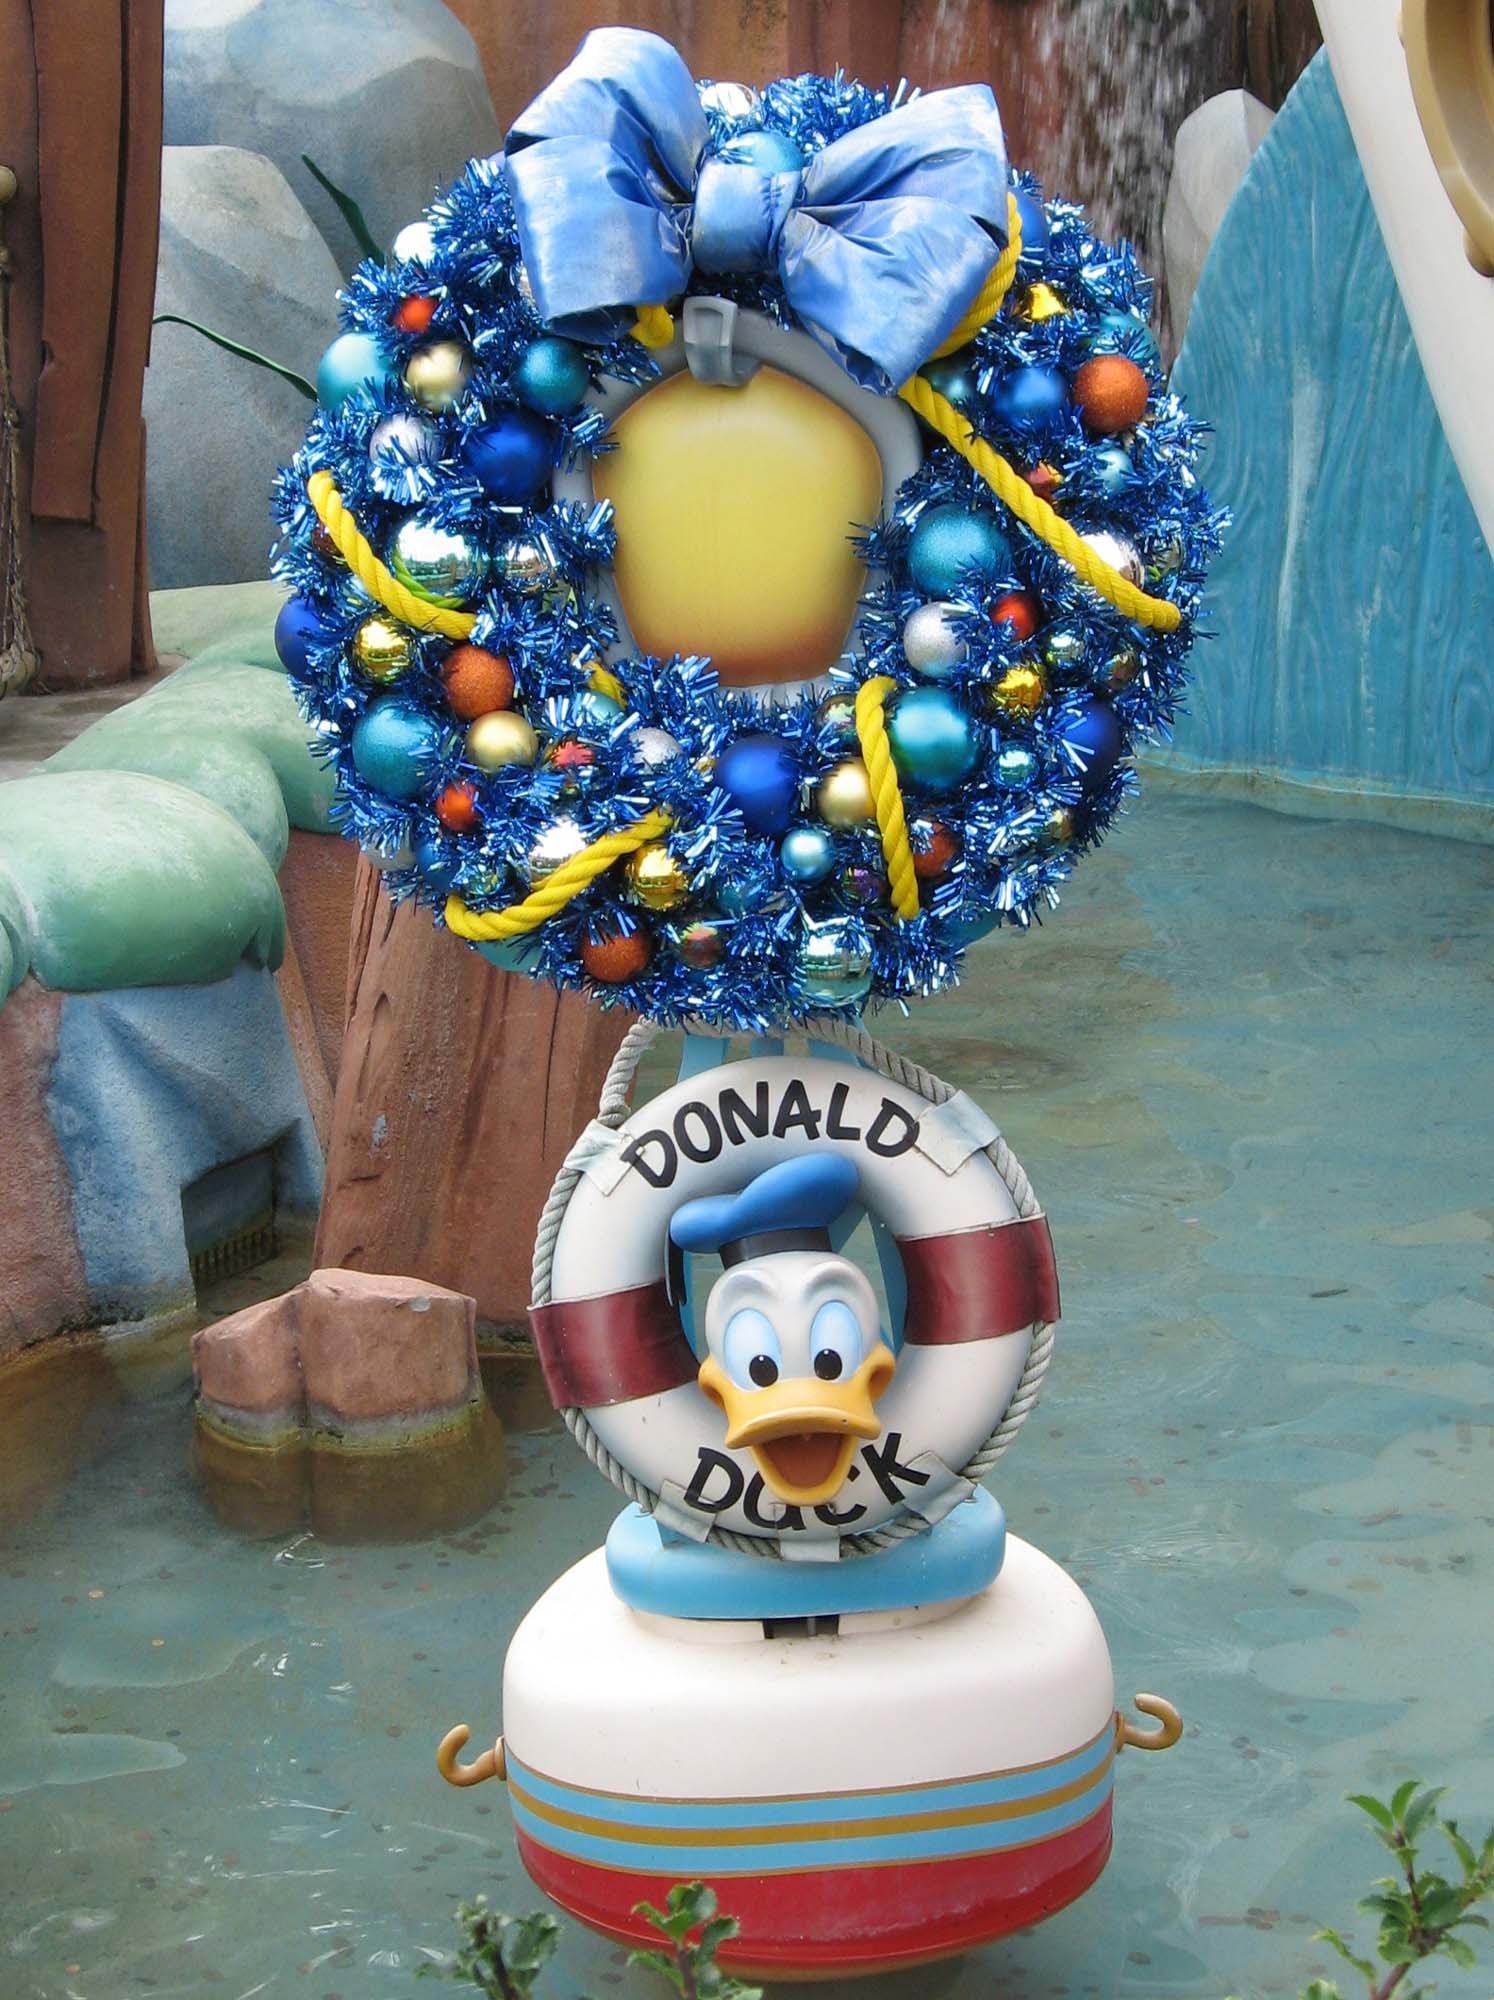 Disneyland - Donald's Boat in Toontown